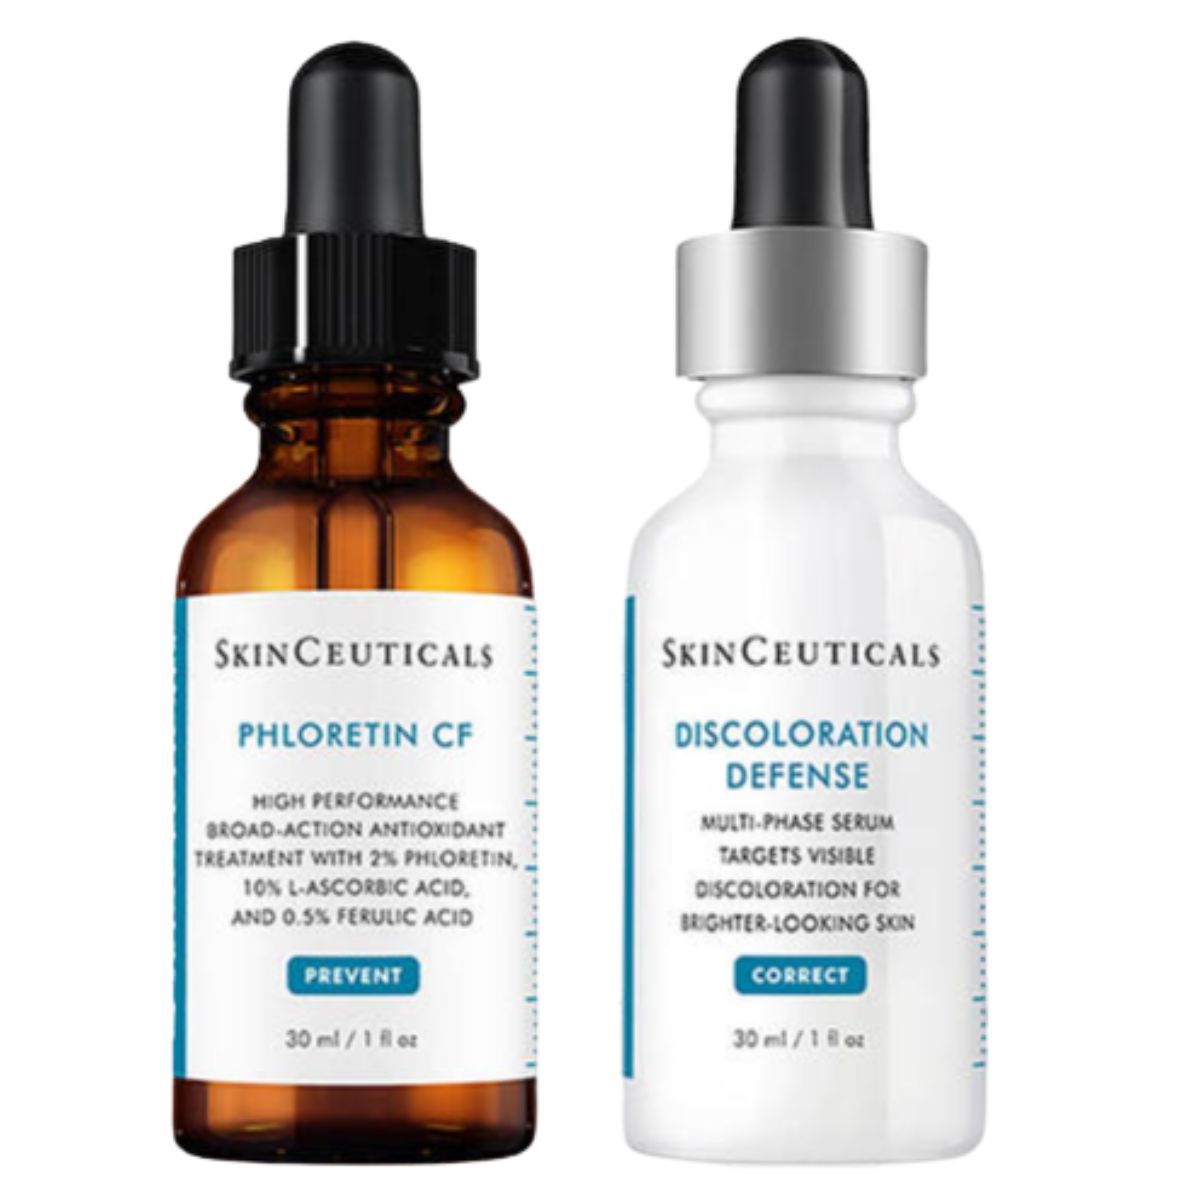 SkinCeuticals Daily Duo Phloretin CF Kit SAVE €66